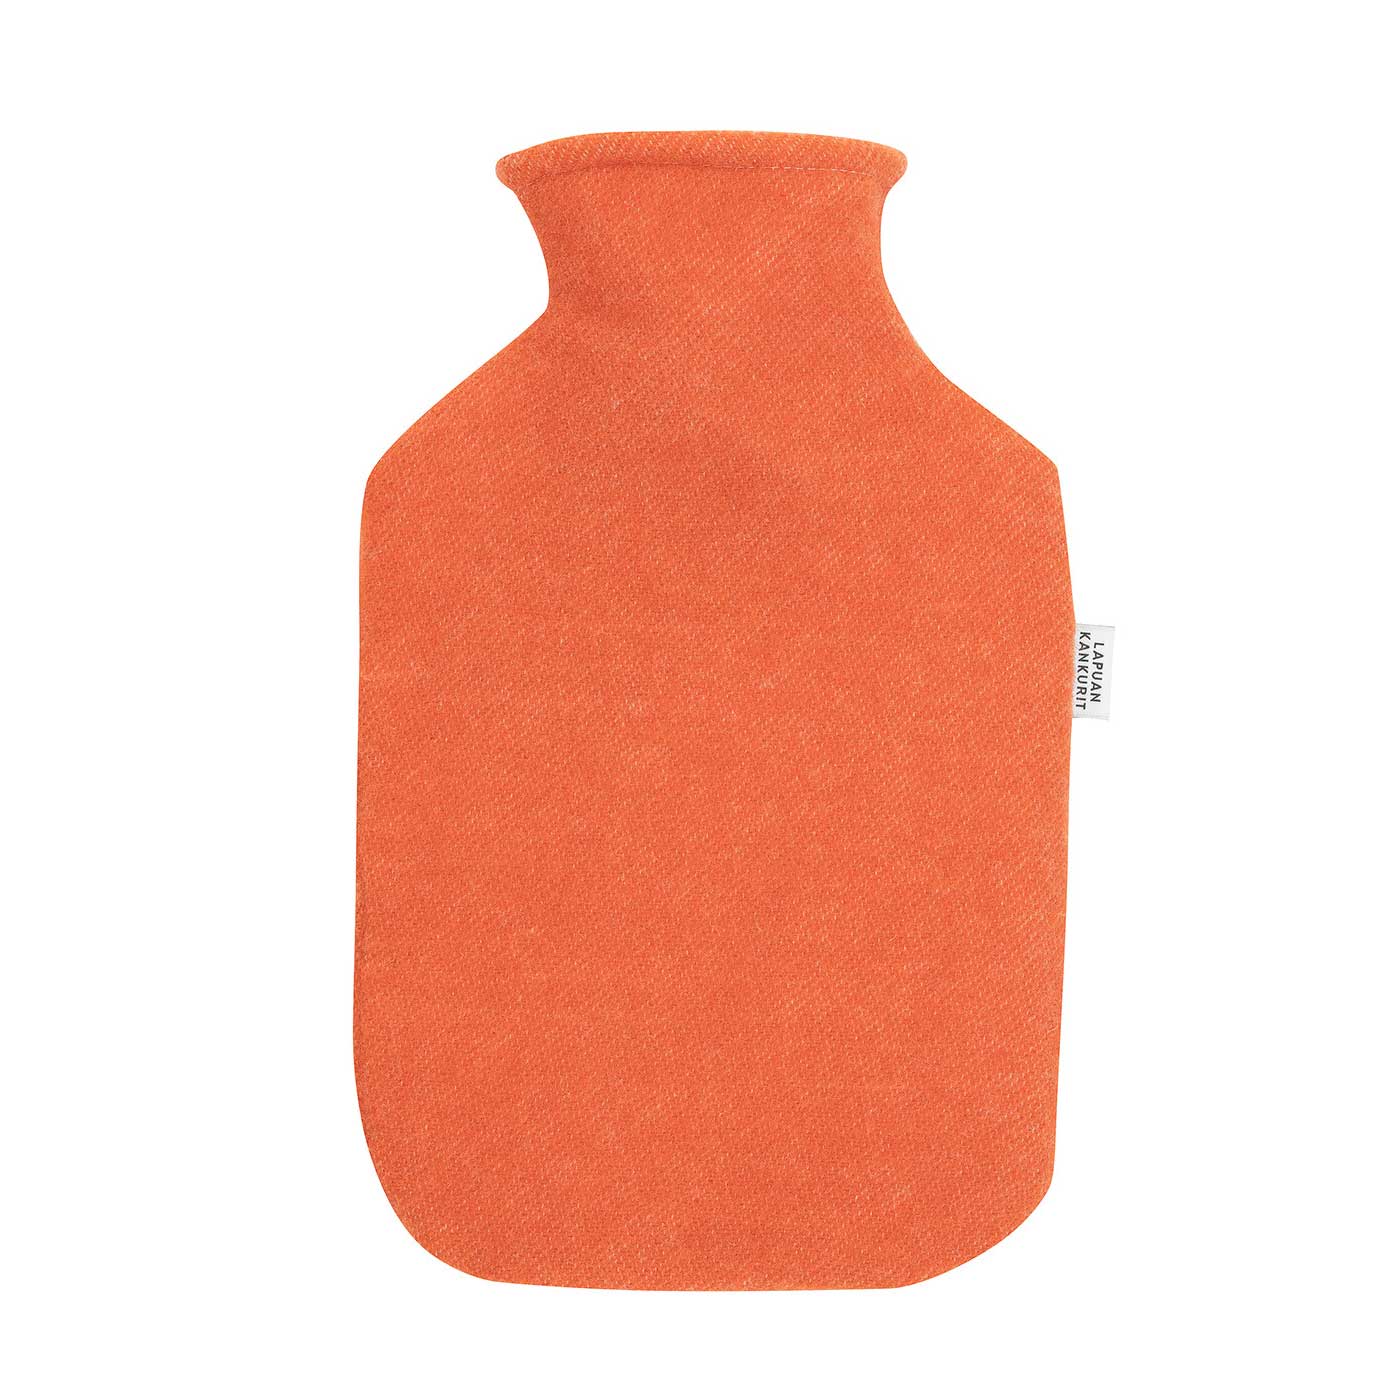 Lapuan Kankurit Wärmflasche TUPLA Farbe: orange, 100 % Wolle aus Finnland 